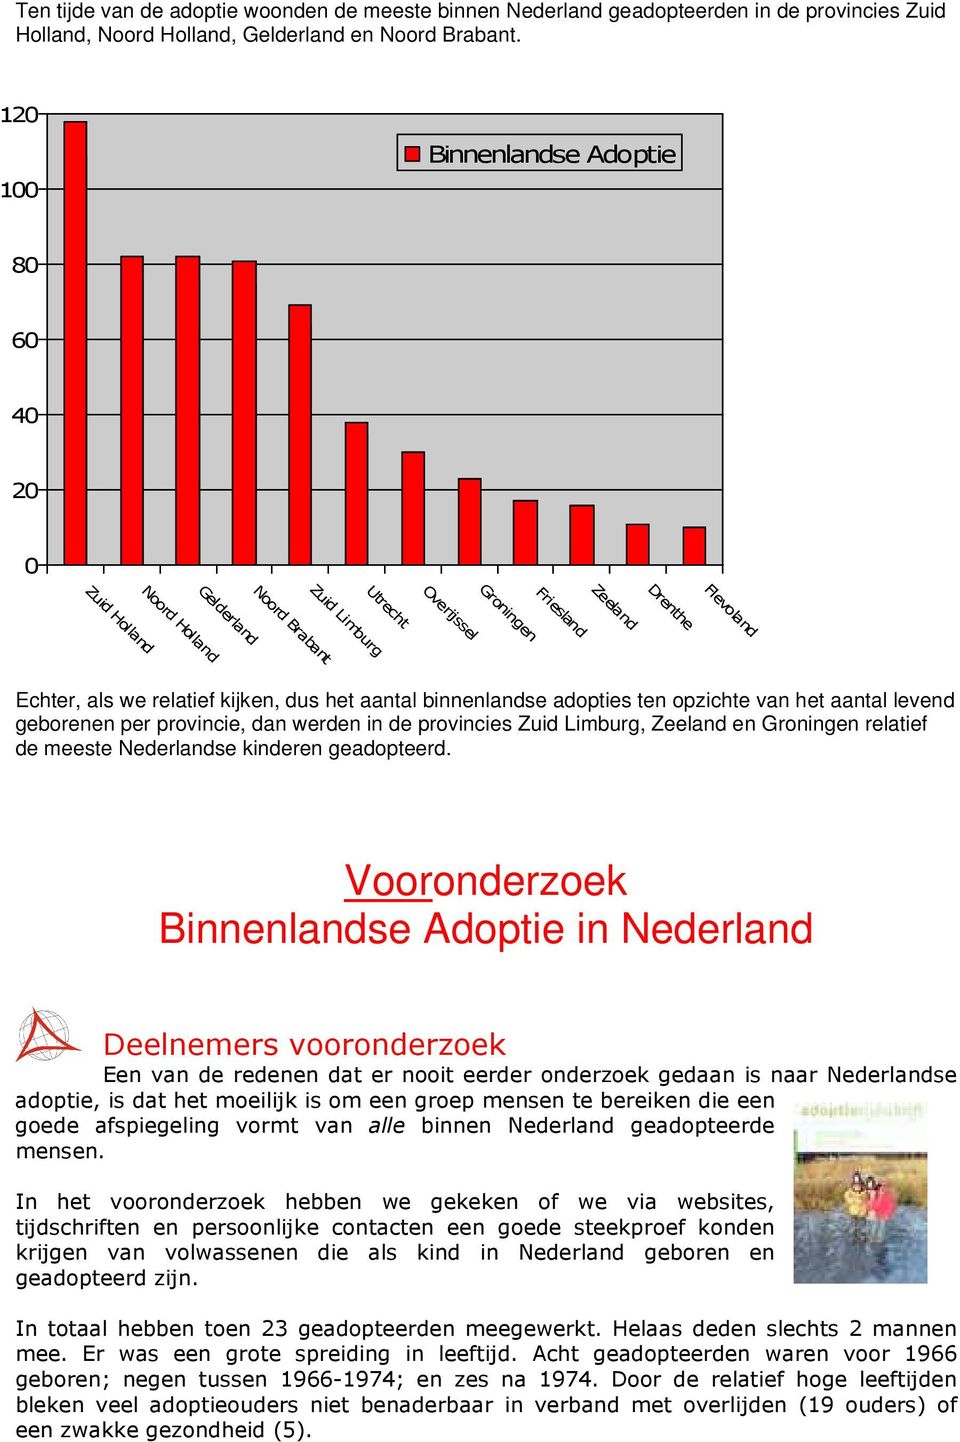 kijken, dus het aantal binnenlandse adopties ten opzichte van het aantal levend geborenen per provincie, dan werden in de provincies Zuid Limburg, Zeeland en Groningen relatief de meeste Nederlandse